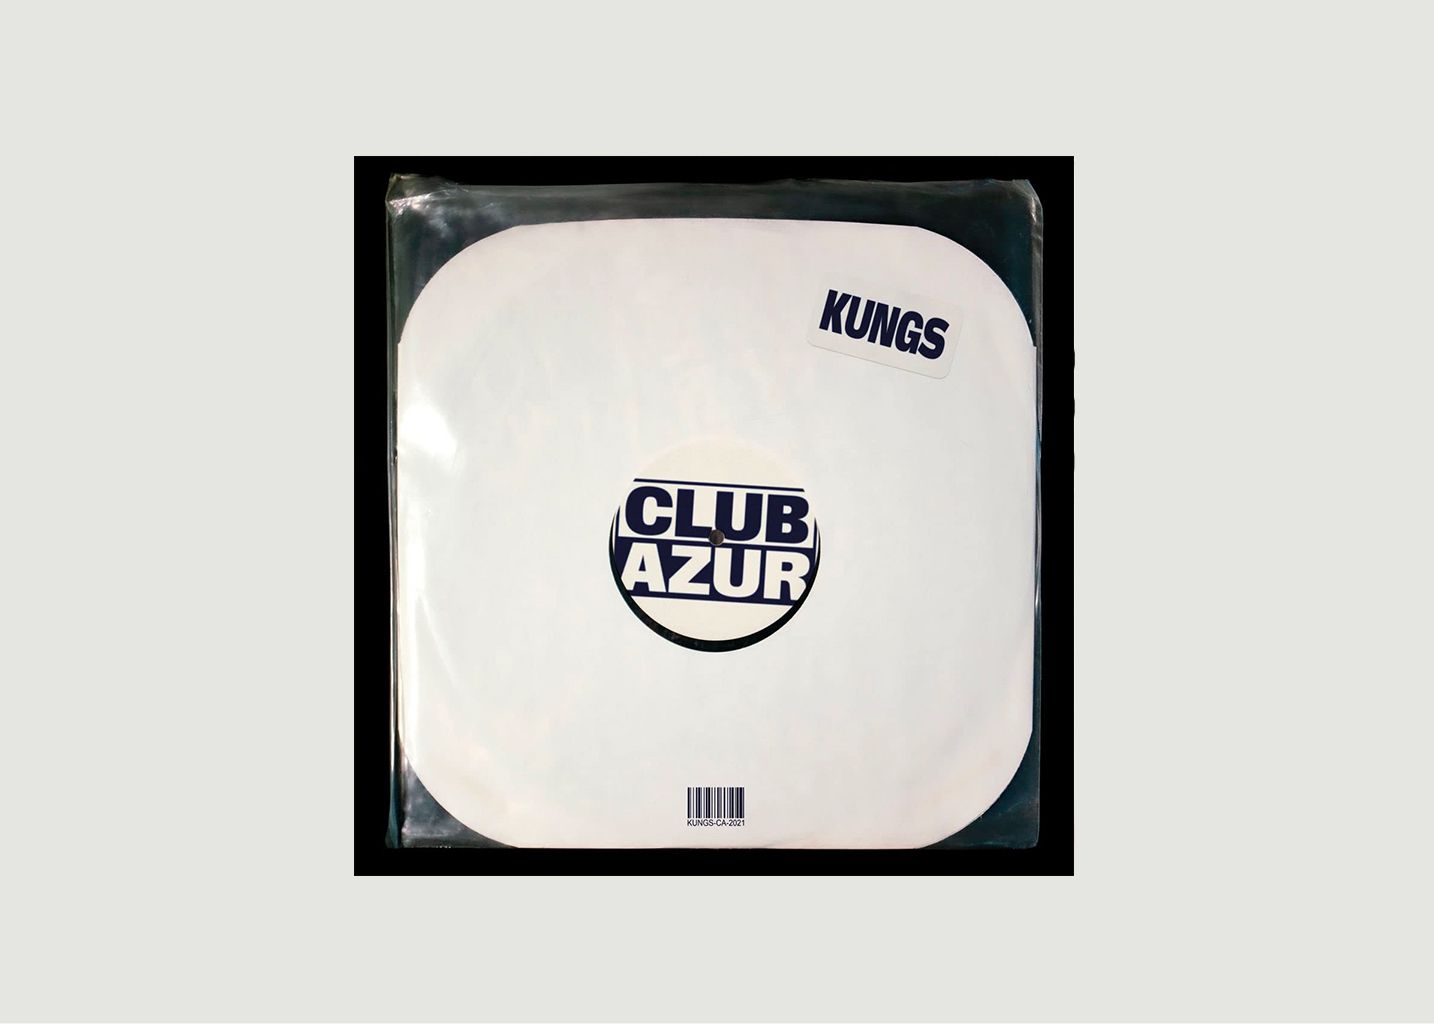 Vinyle Club Azur Kungs  - La vinyl-thèque idéale